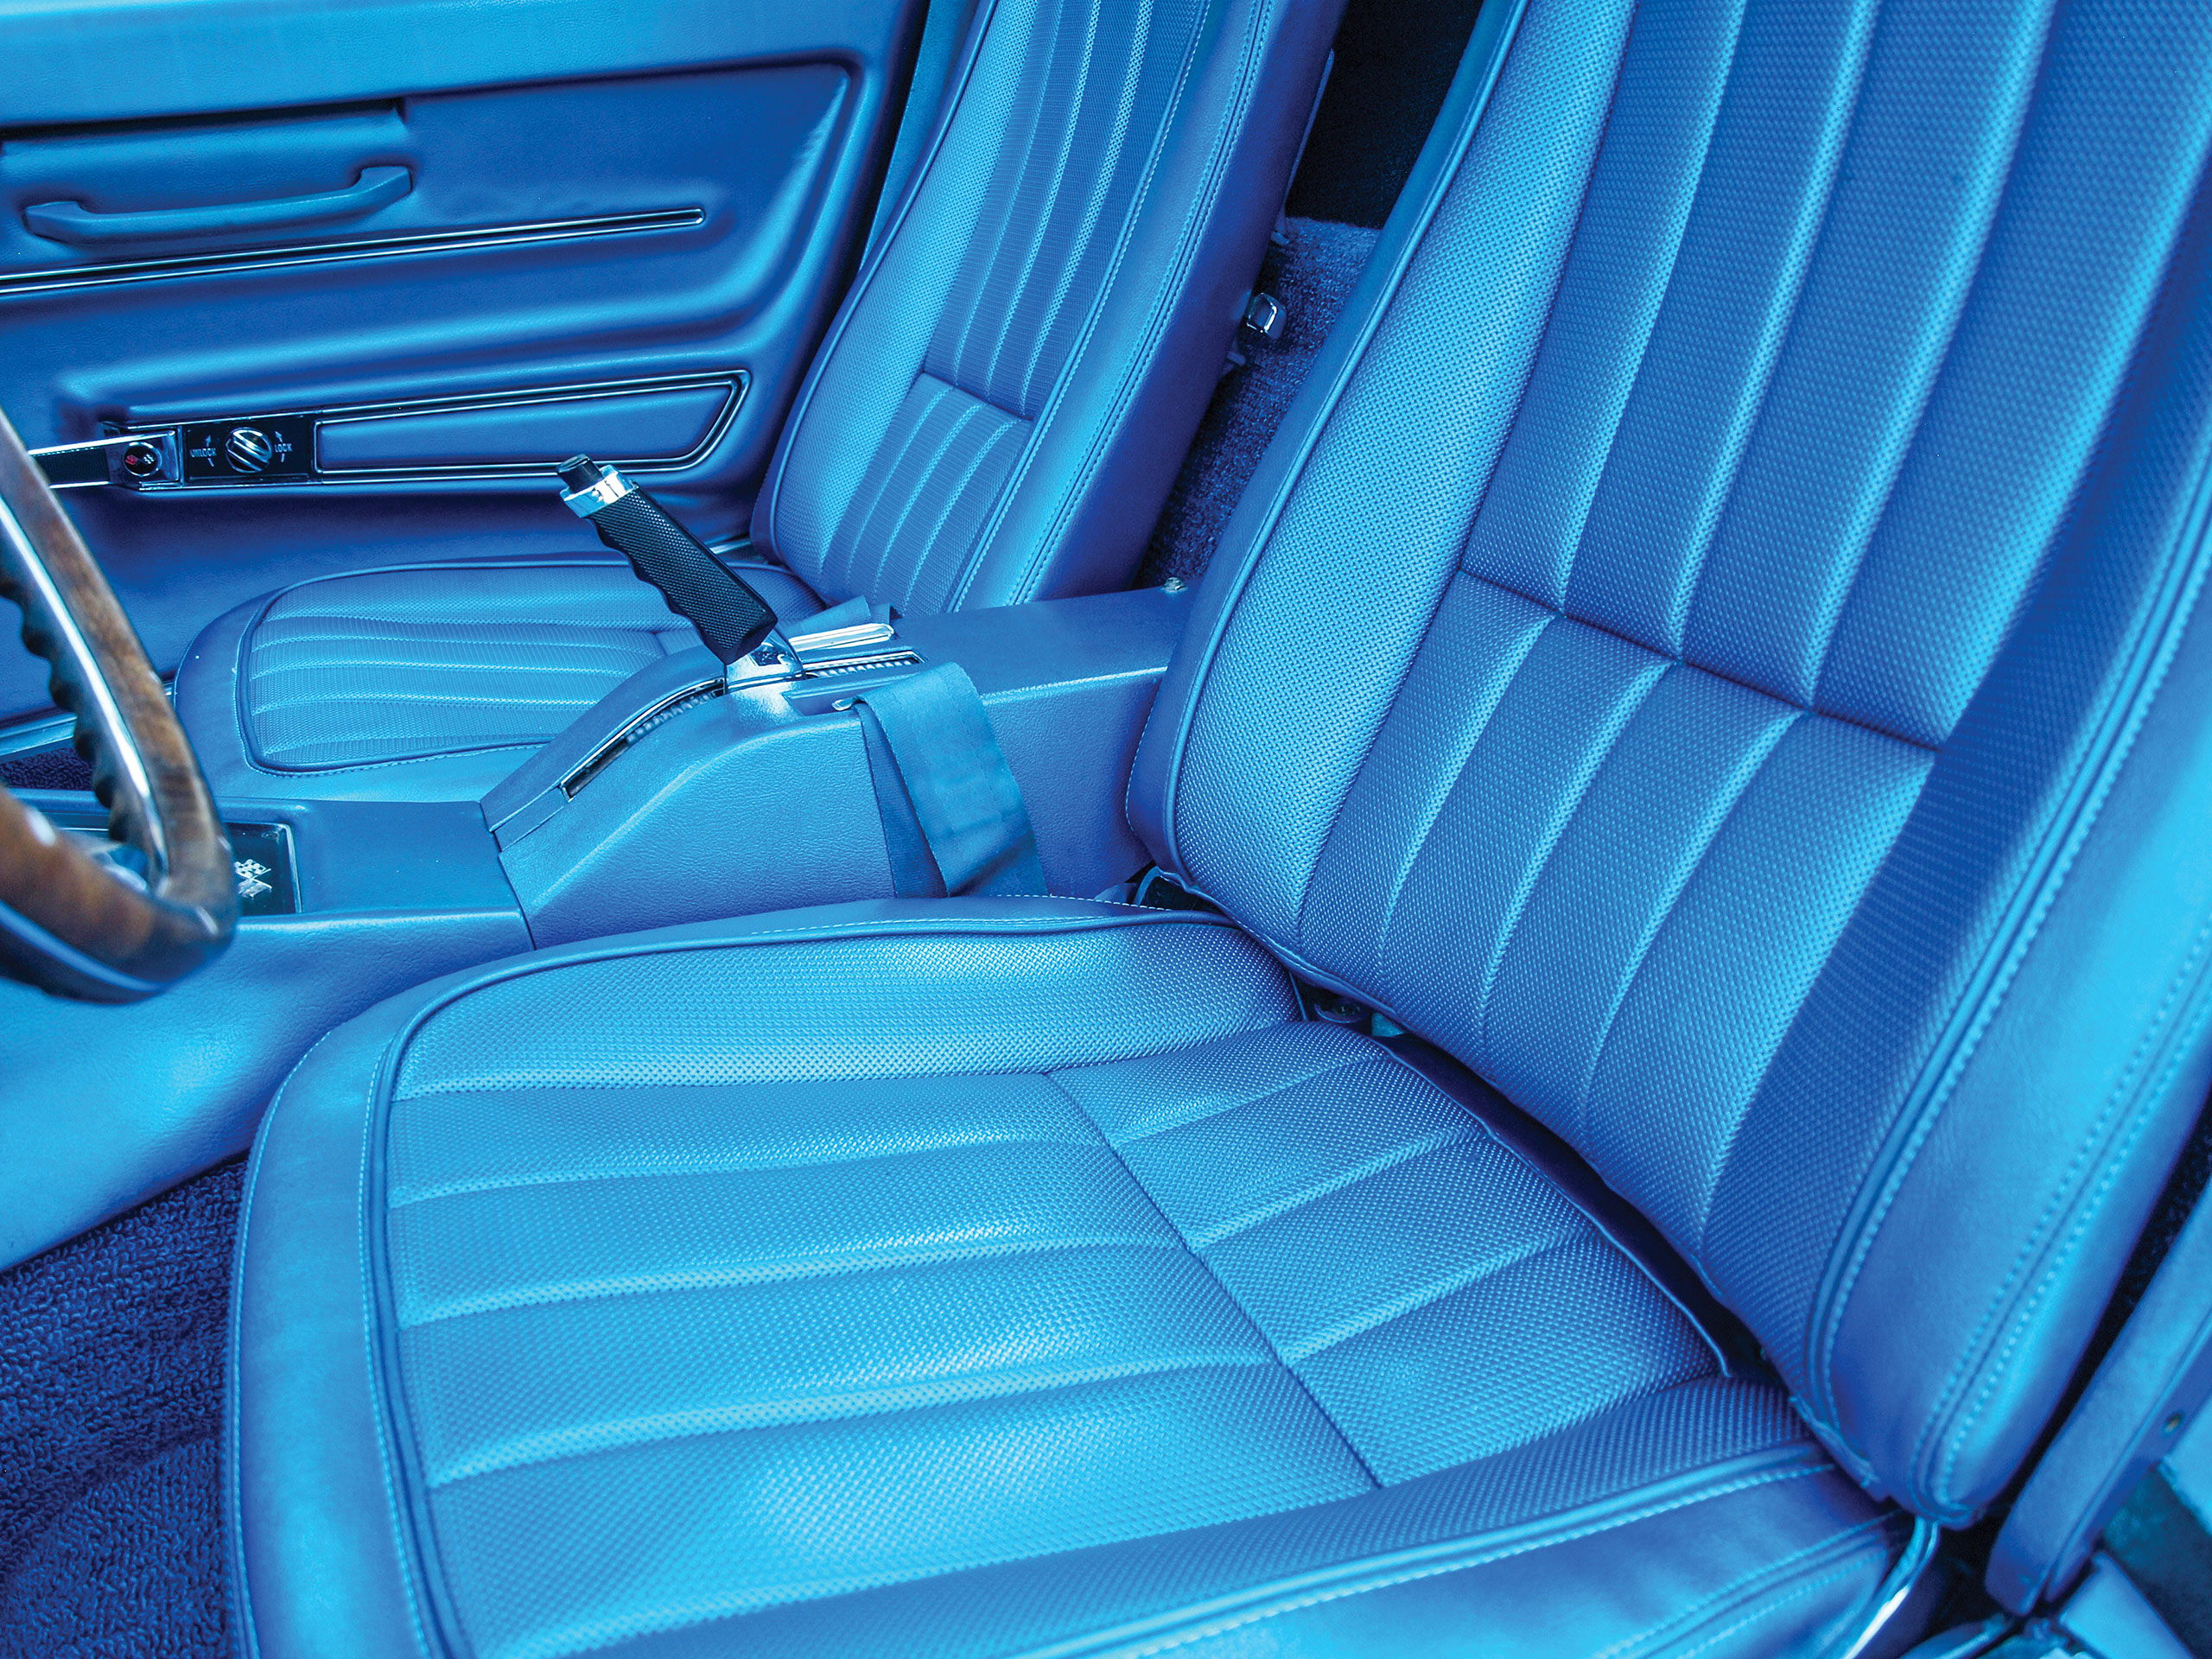 1968 Corvette C3 Vinyl Seat Covers- Bright Blue CA-417641 